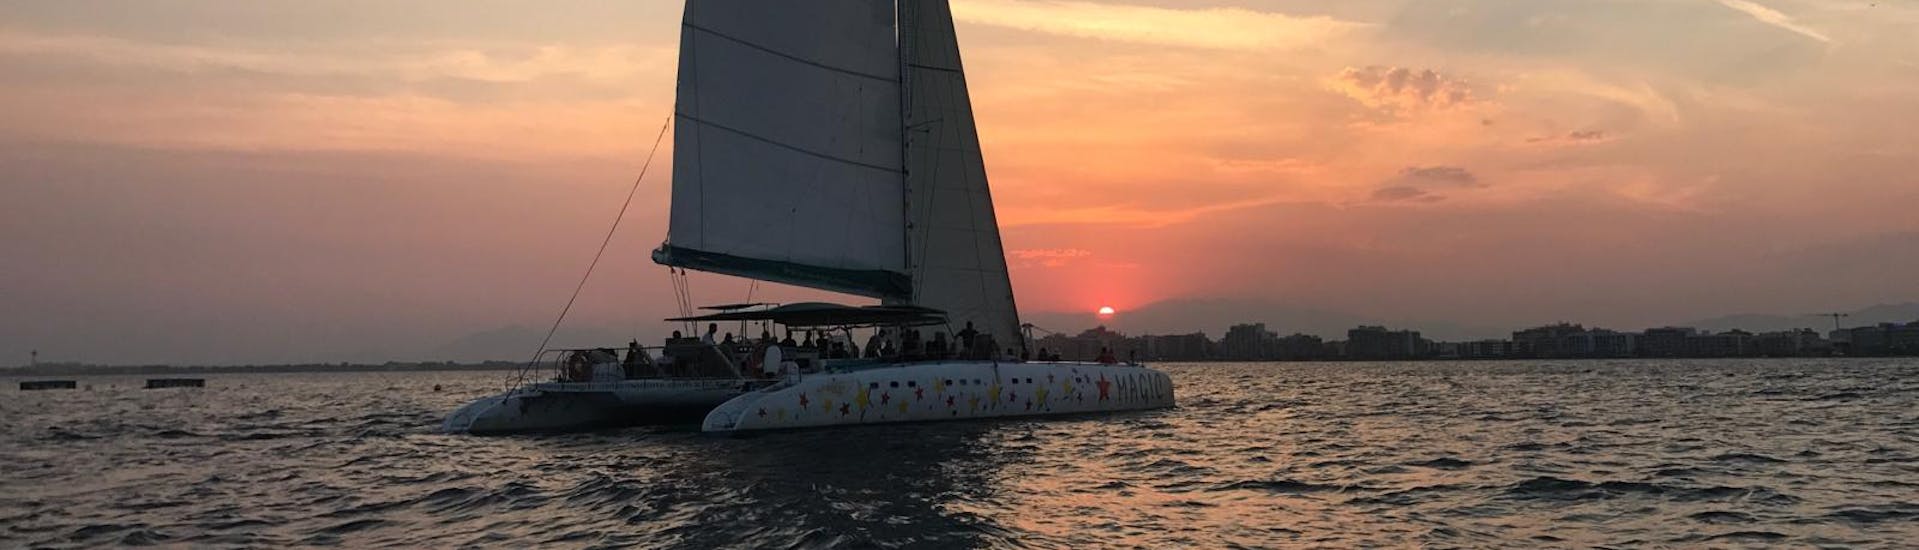 Gita in catamarano al tramonto da Roses con Magic Catamarans Mallorca